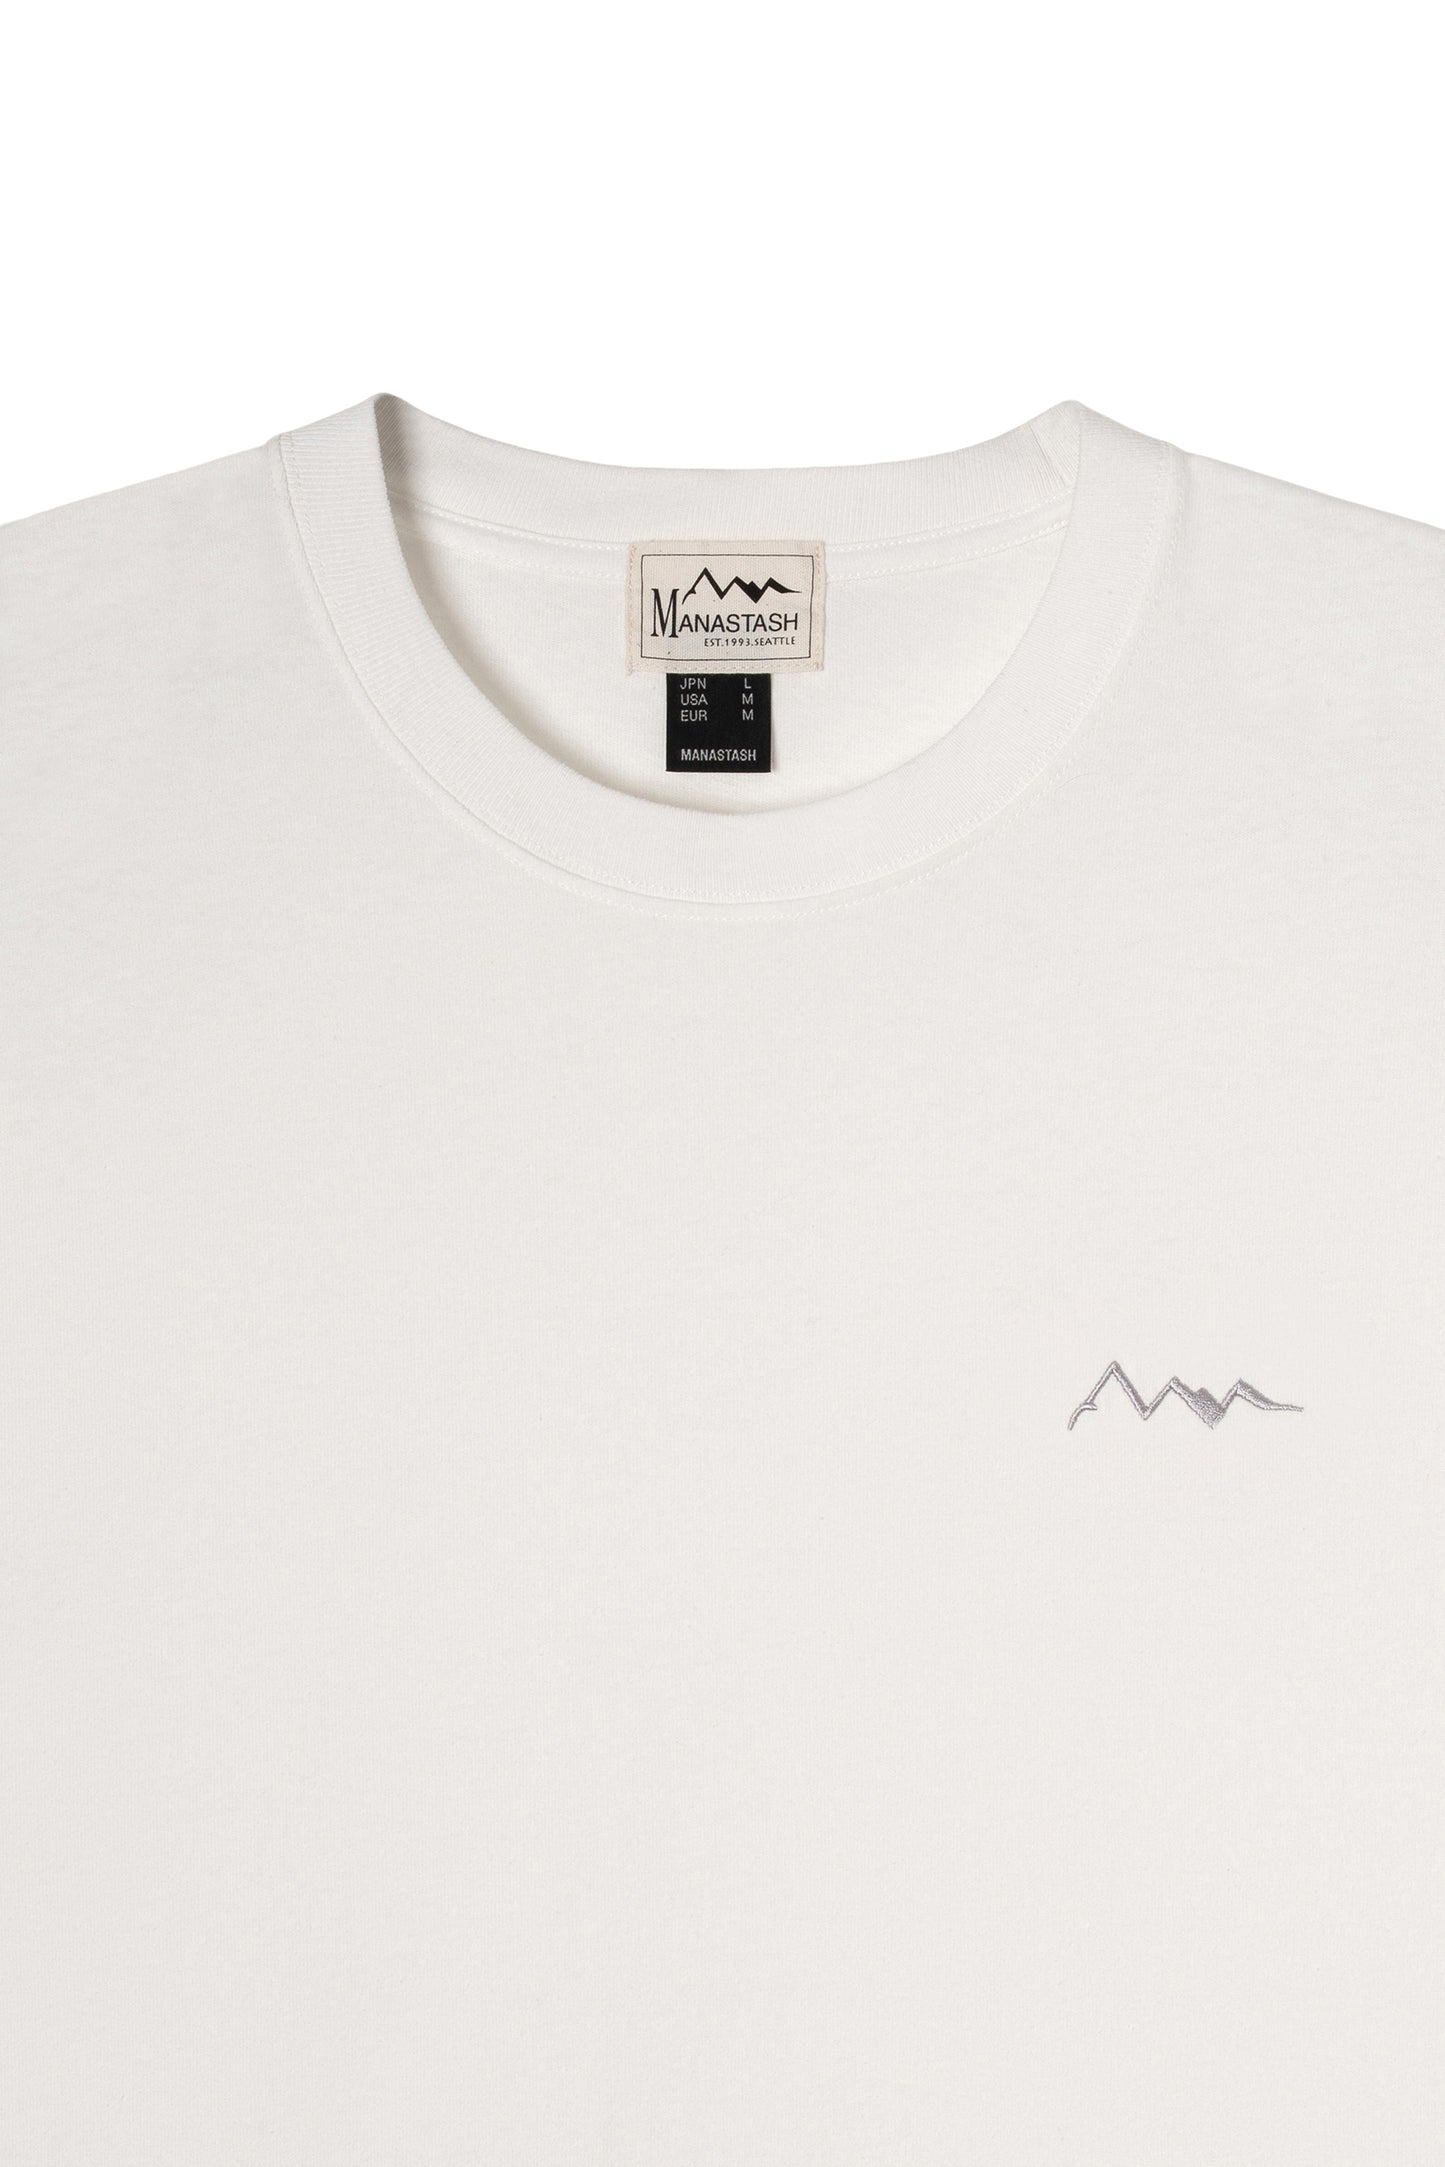 Mountain Logo Tee (White)